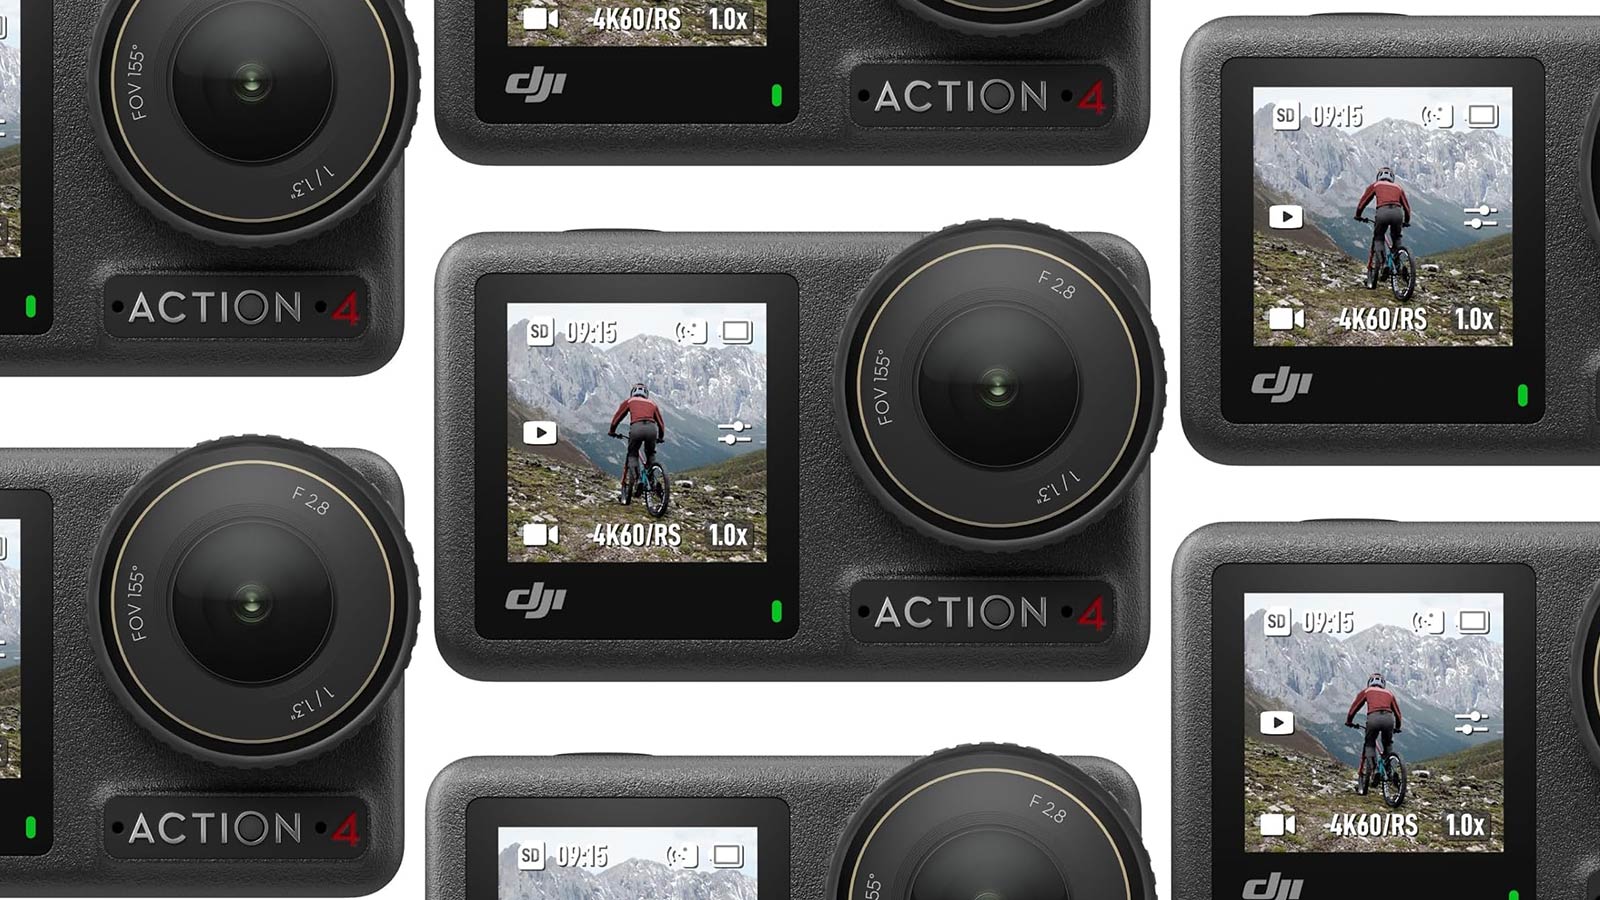 Ahorre $ 100 y obtenga la cámara DJI Osmo Action 4 por el precio más barato en Amazon